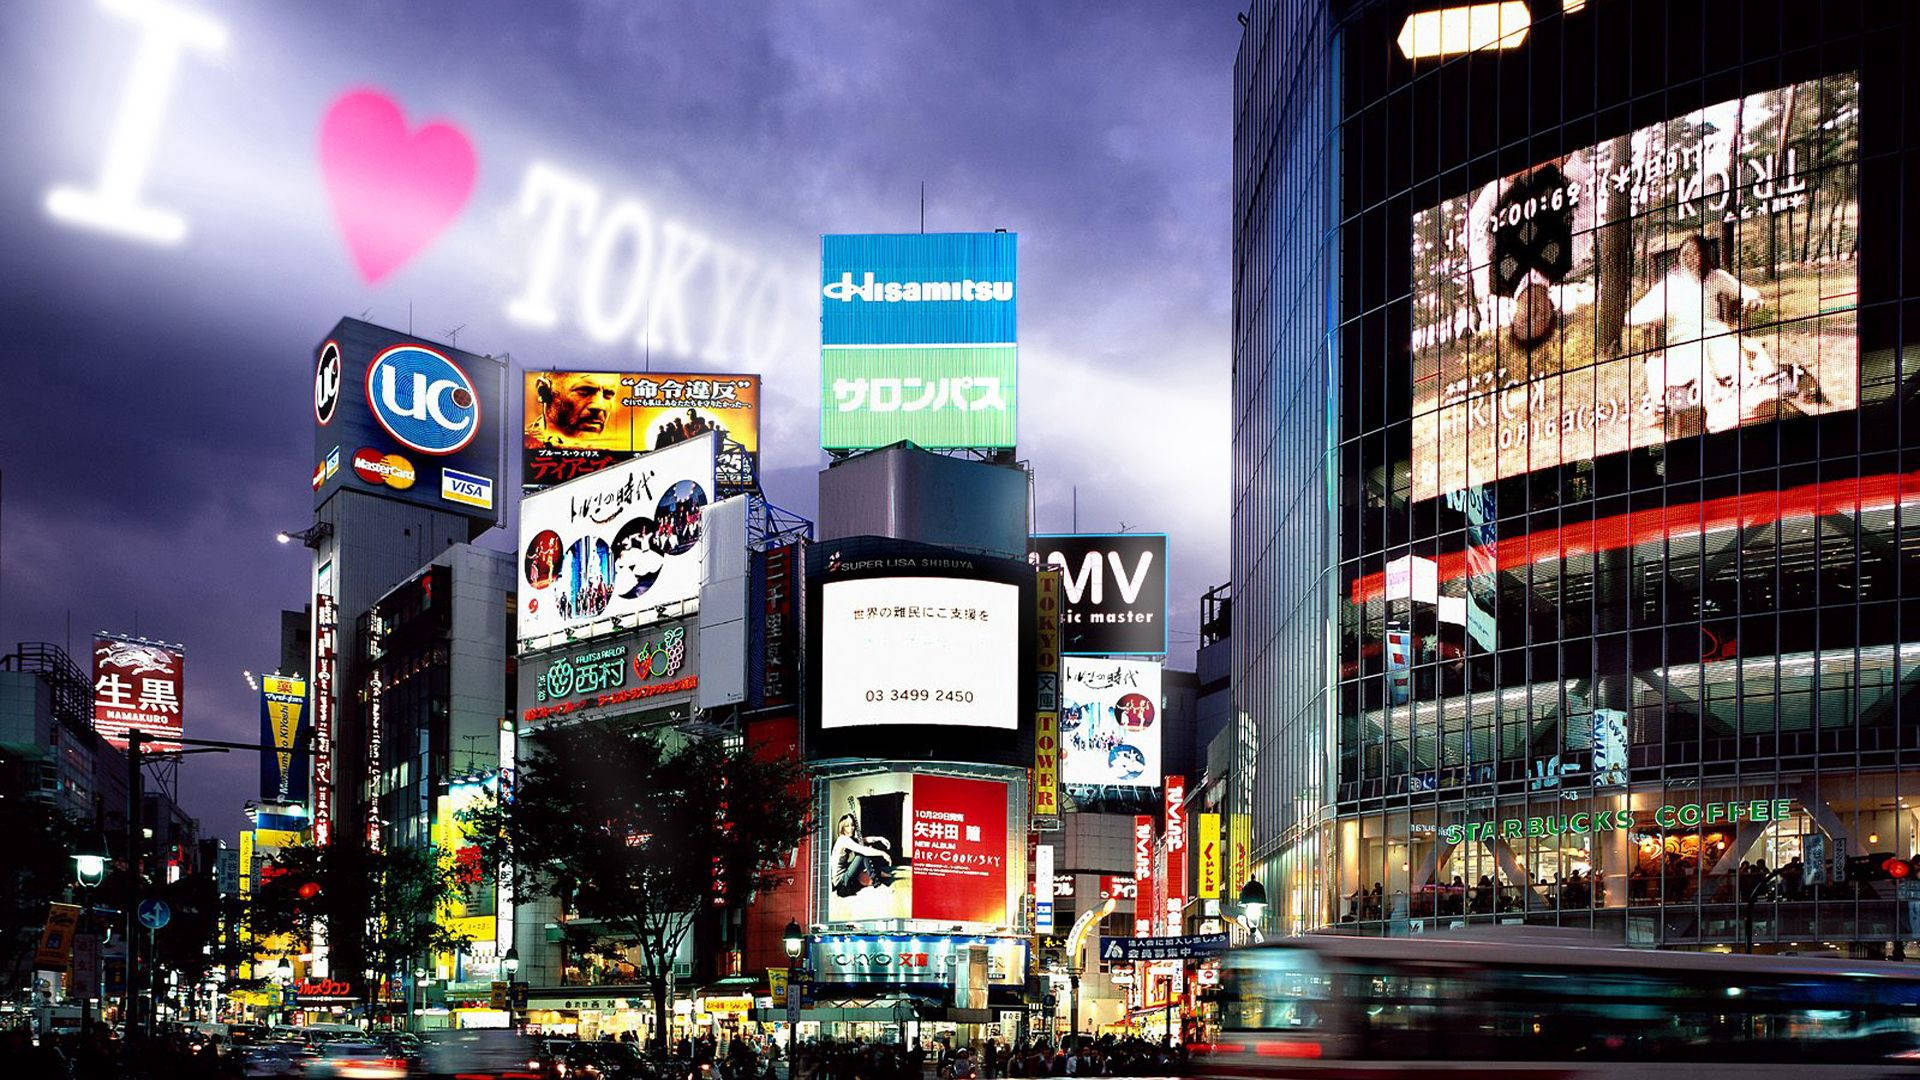 Illuminated Digital Signboards in Tokyo Wallpaper